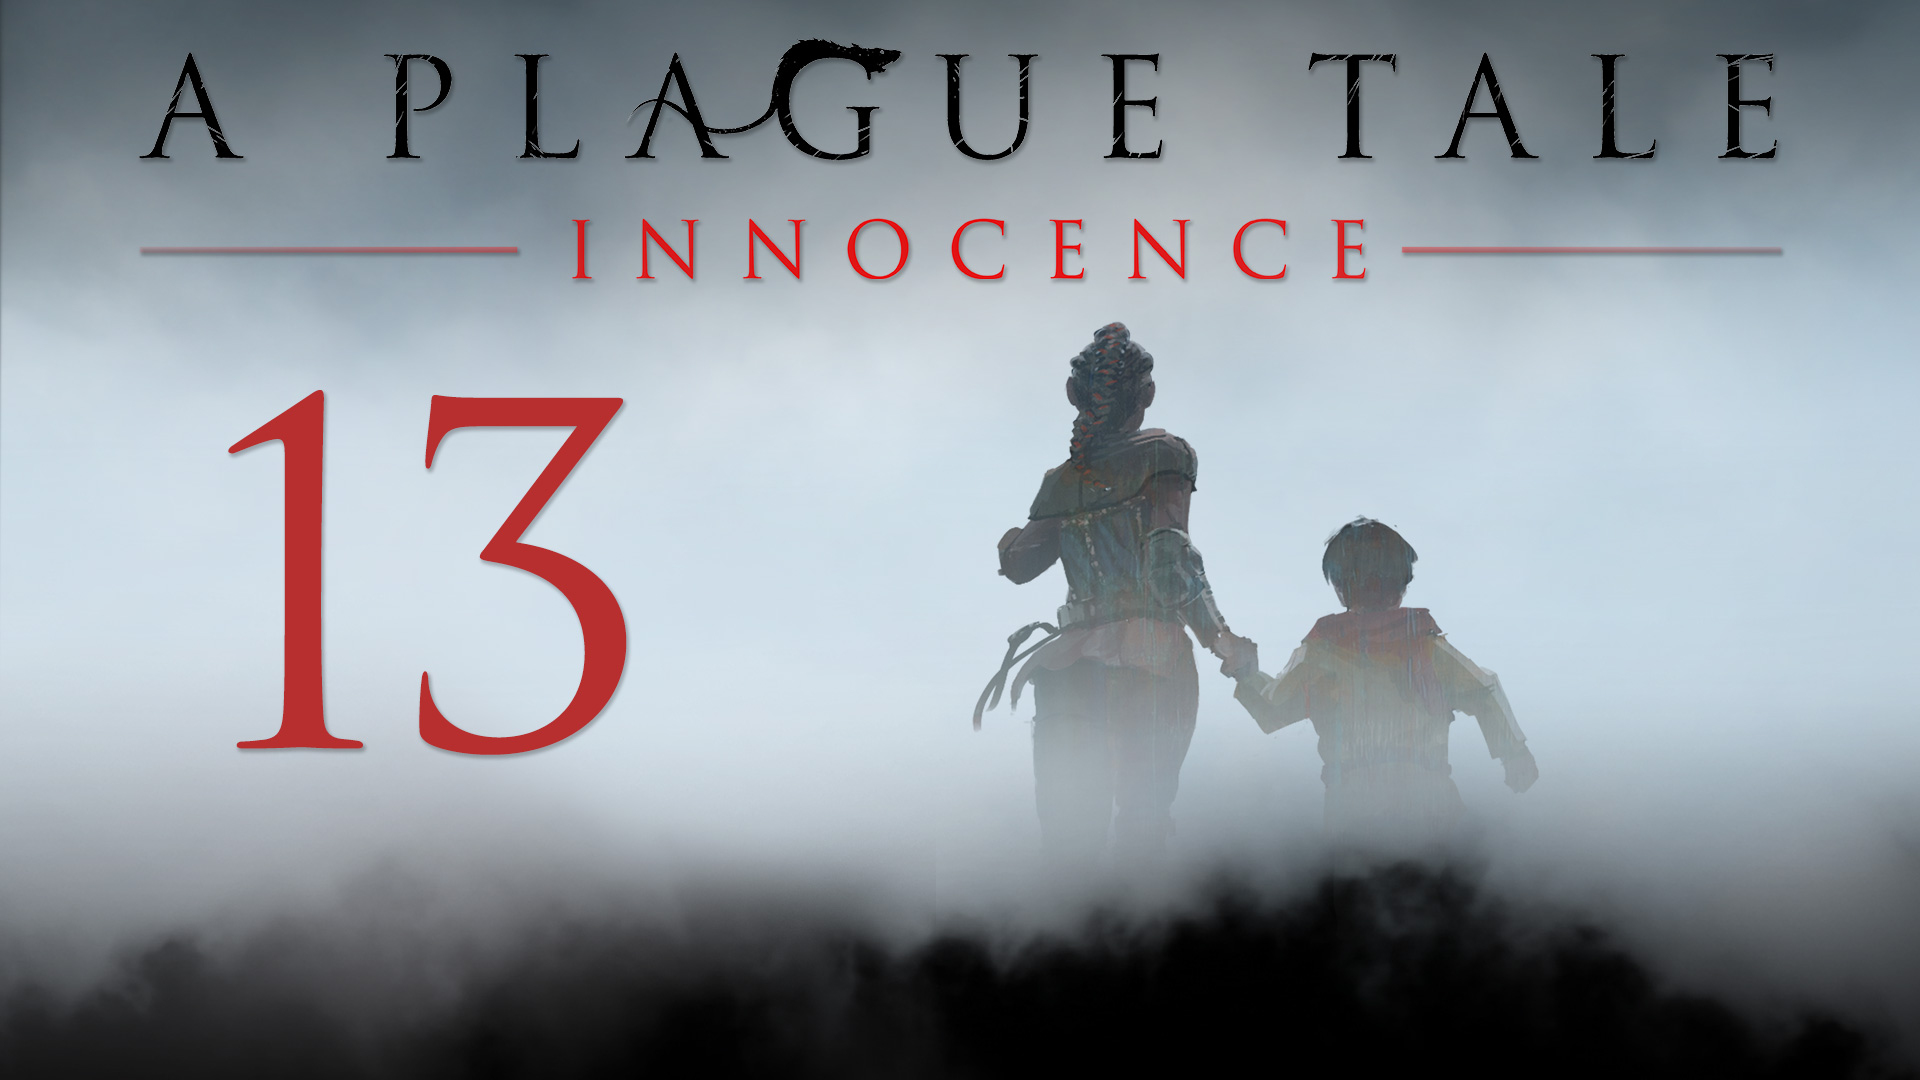 A Plague Tale: Innocence - Глава 13: Епитимья - Прохождение игры на русском [#13] | PC (2019 г.)